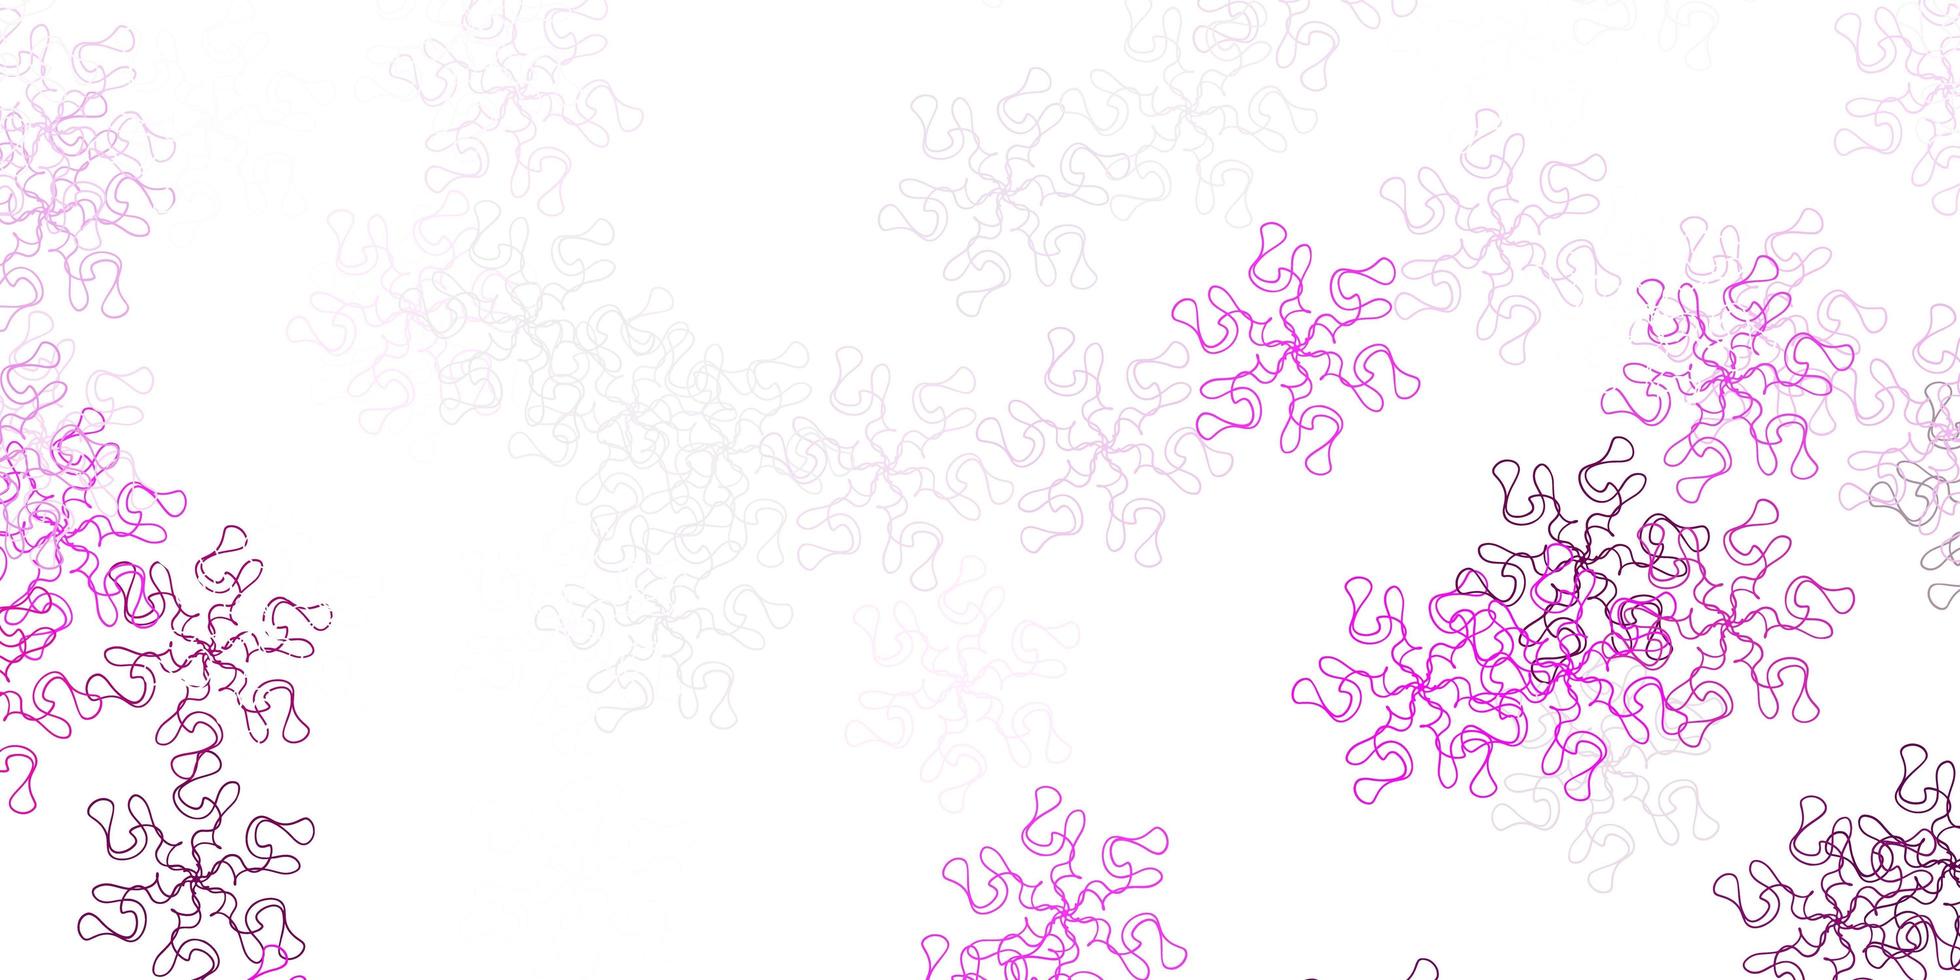 motif de doodle vecteur rose clair avec des fleurs.